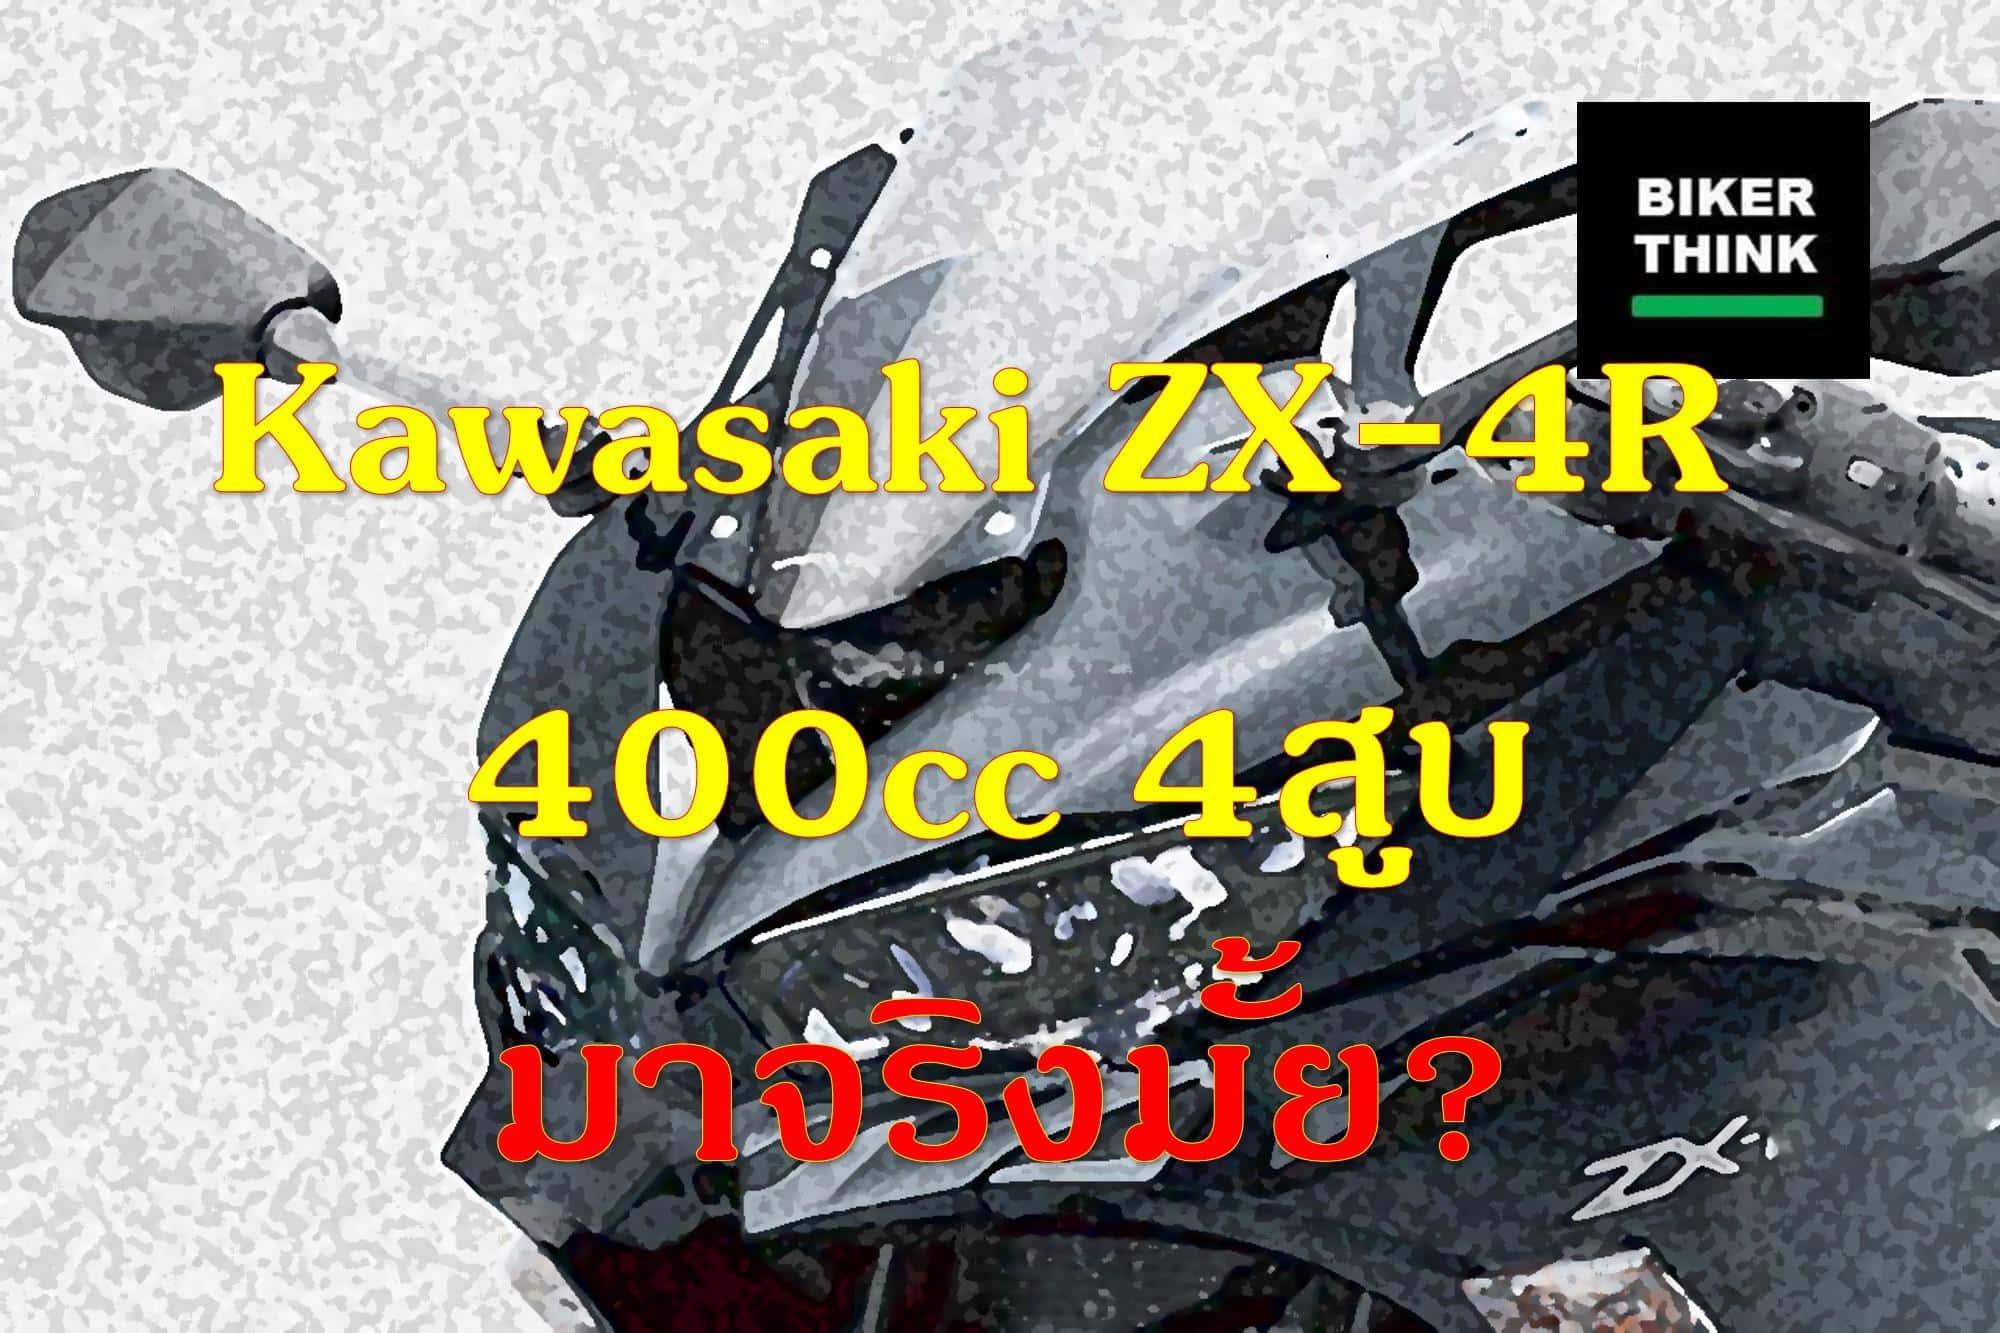 ข่าวลืออีกแล้ว Kawasaki ZX-4R 400cc 4สูบ มาจริงมั้ย?